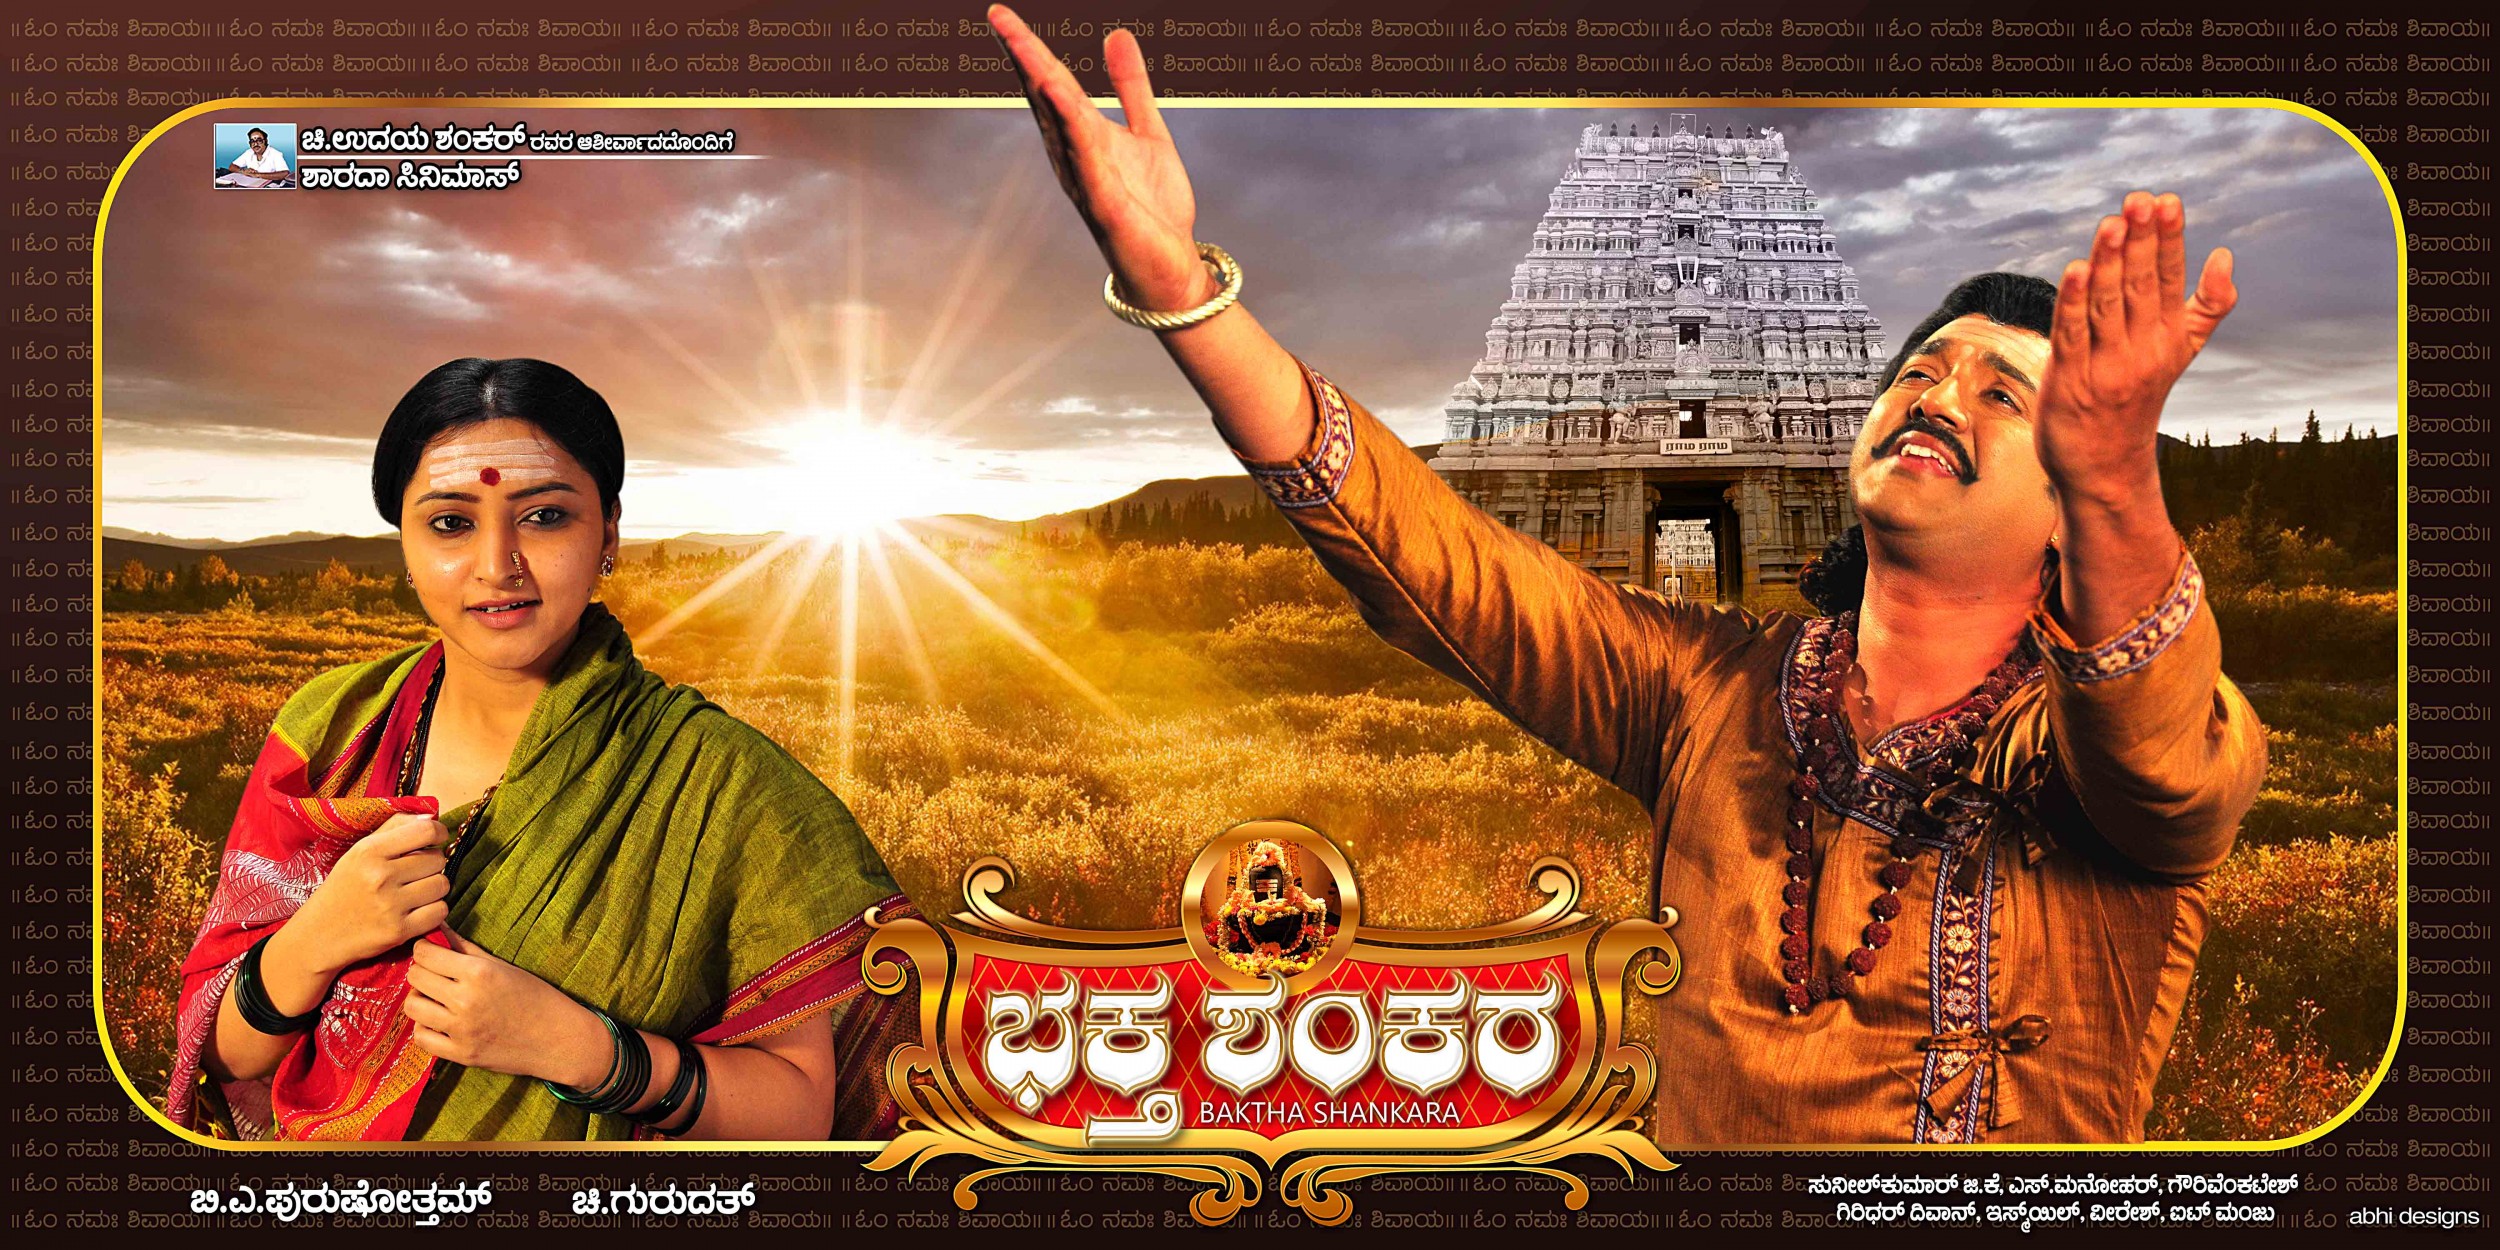 Mega Sized Movie Poster Image for Baktha Shankara (#10 of 10)